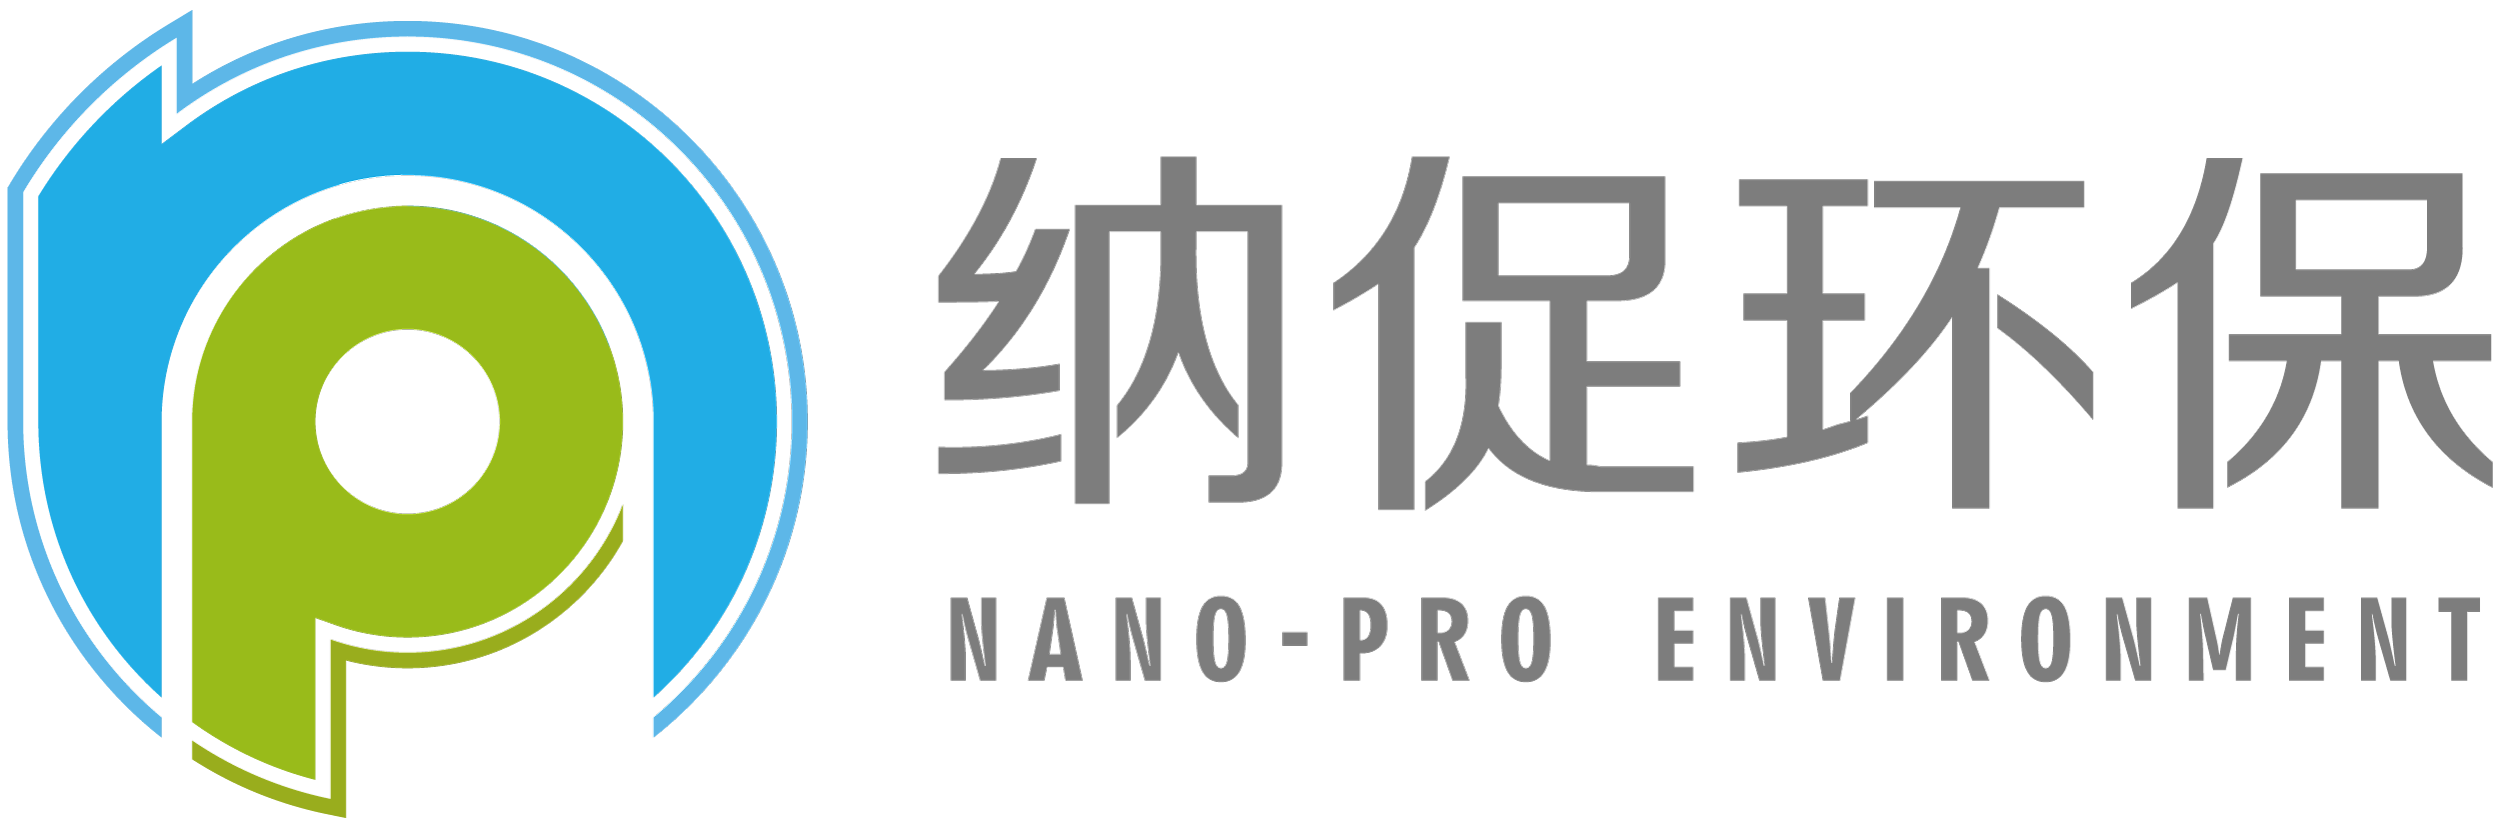 Nano-pro_Logo.png